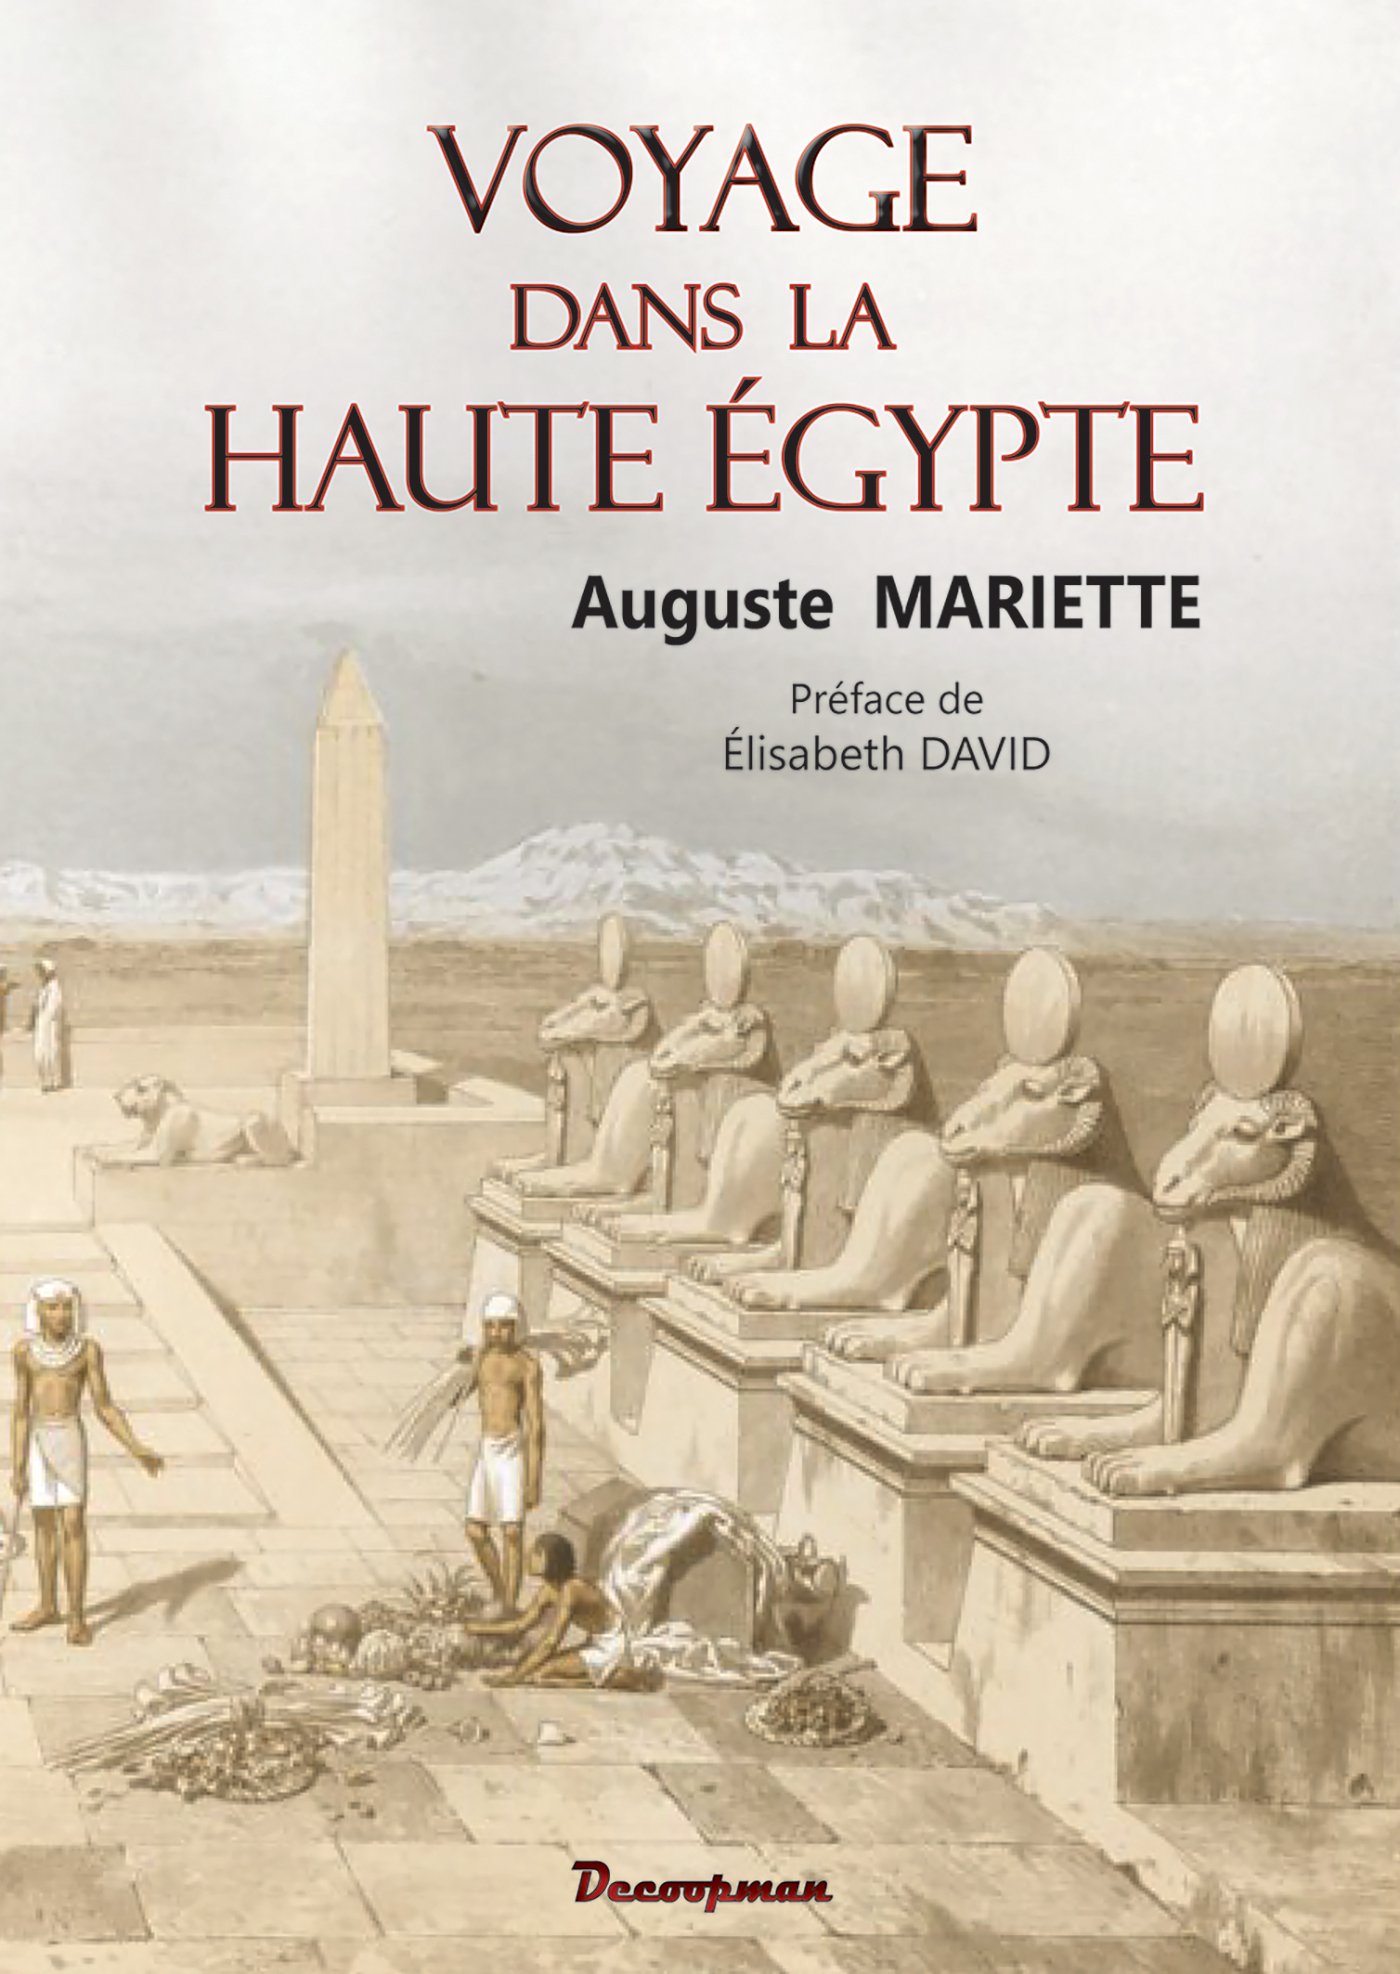 Voyage dans la Haute Egypte, 2016, 336 p.